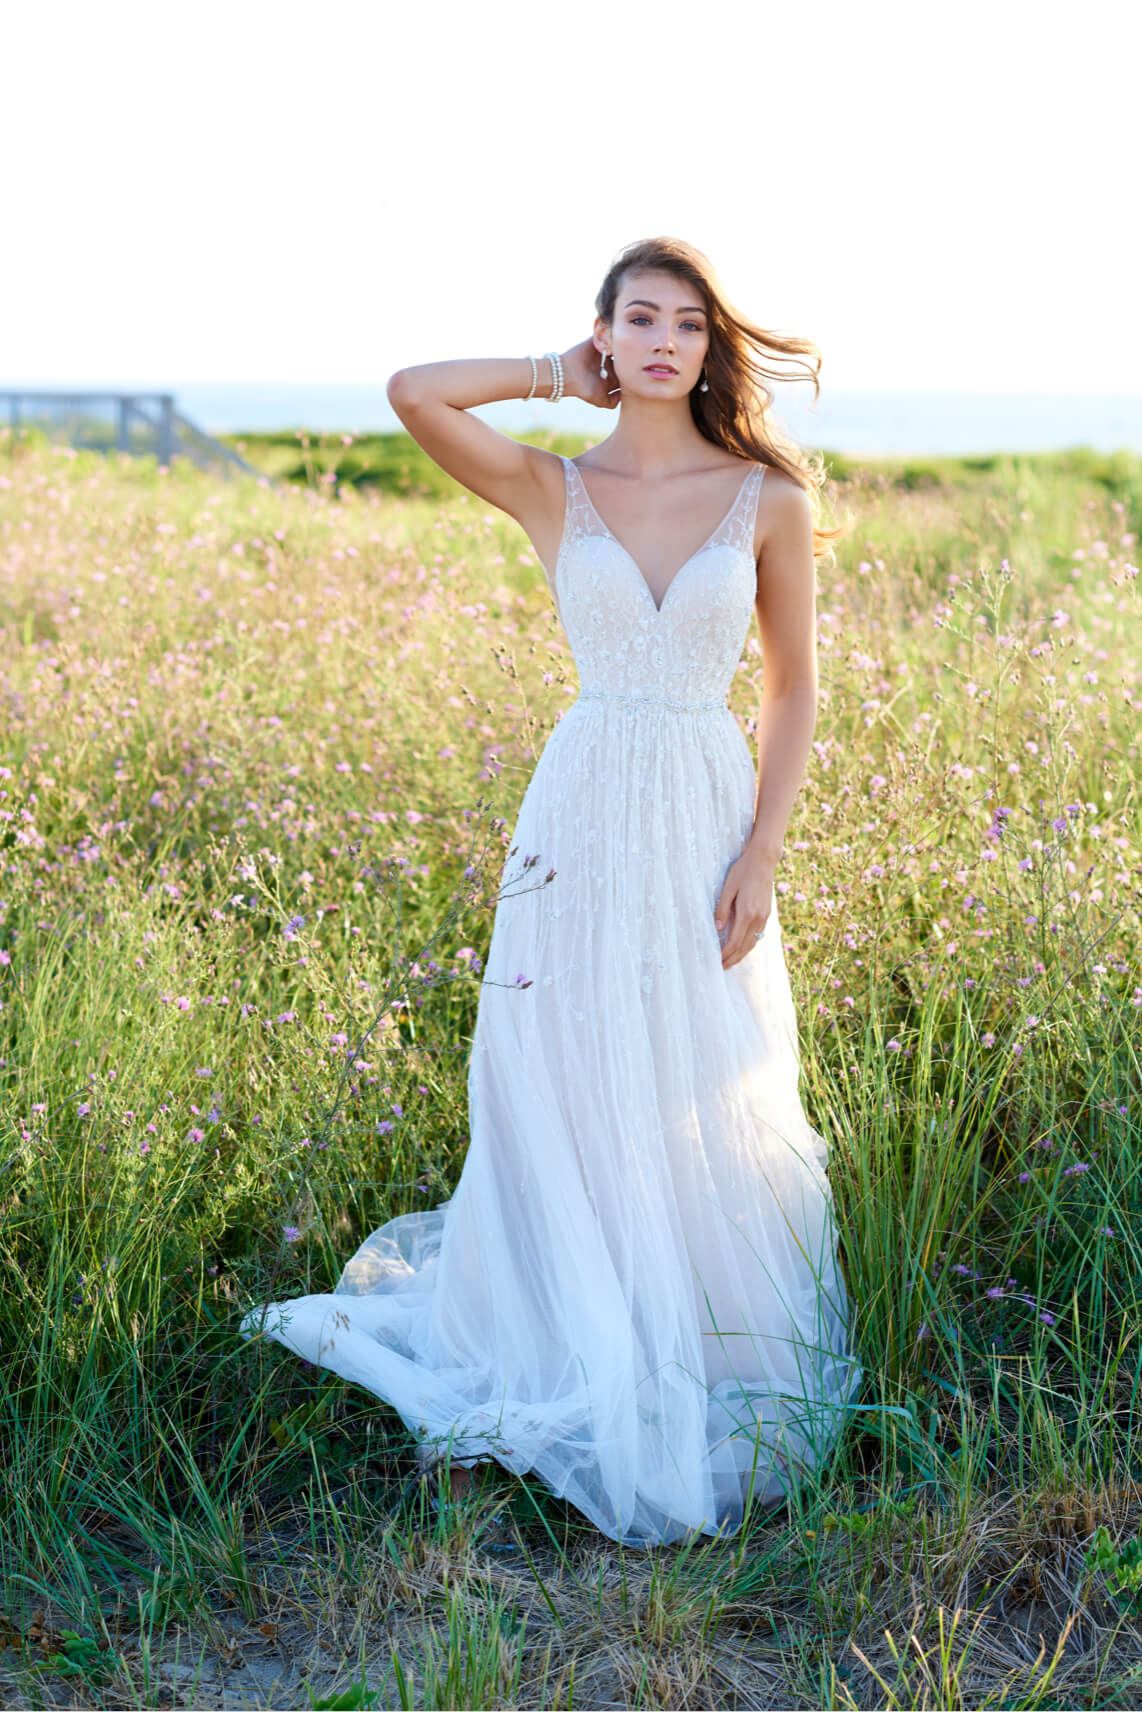 Brunette model in field wearing wedding dress